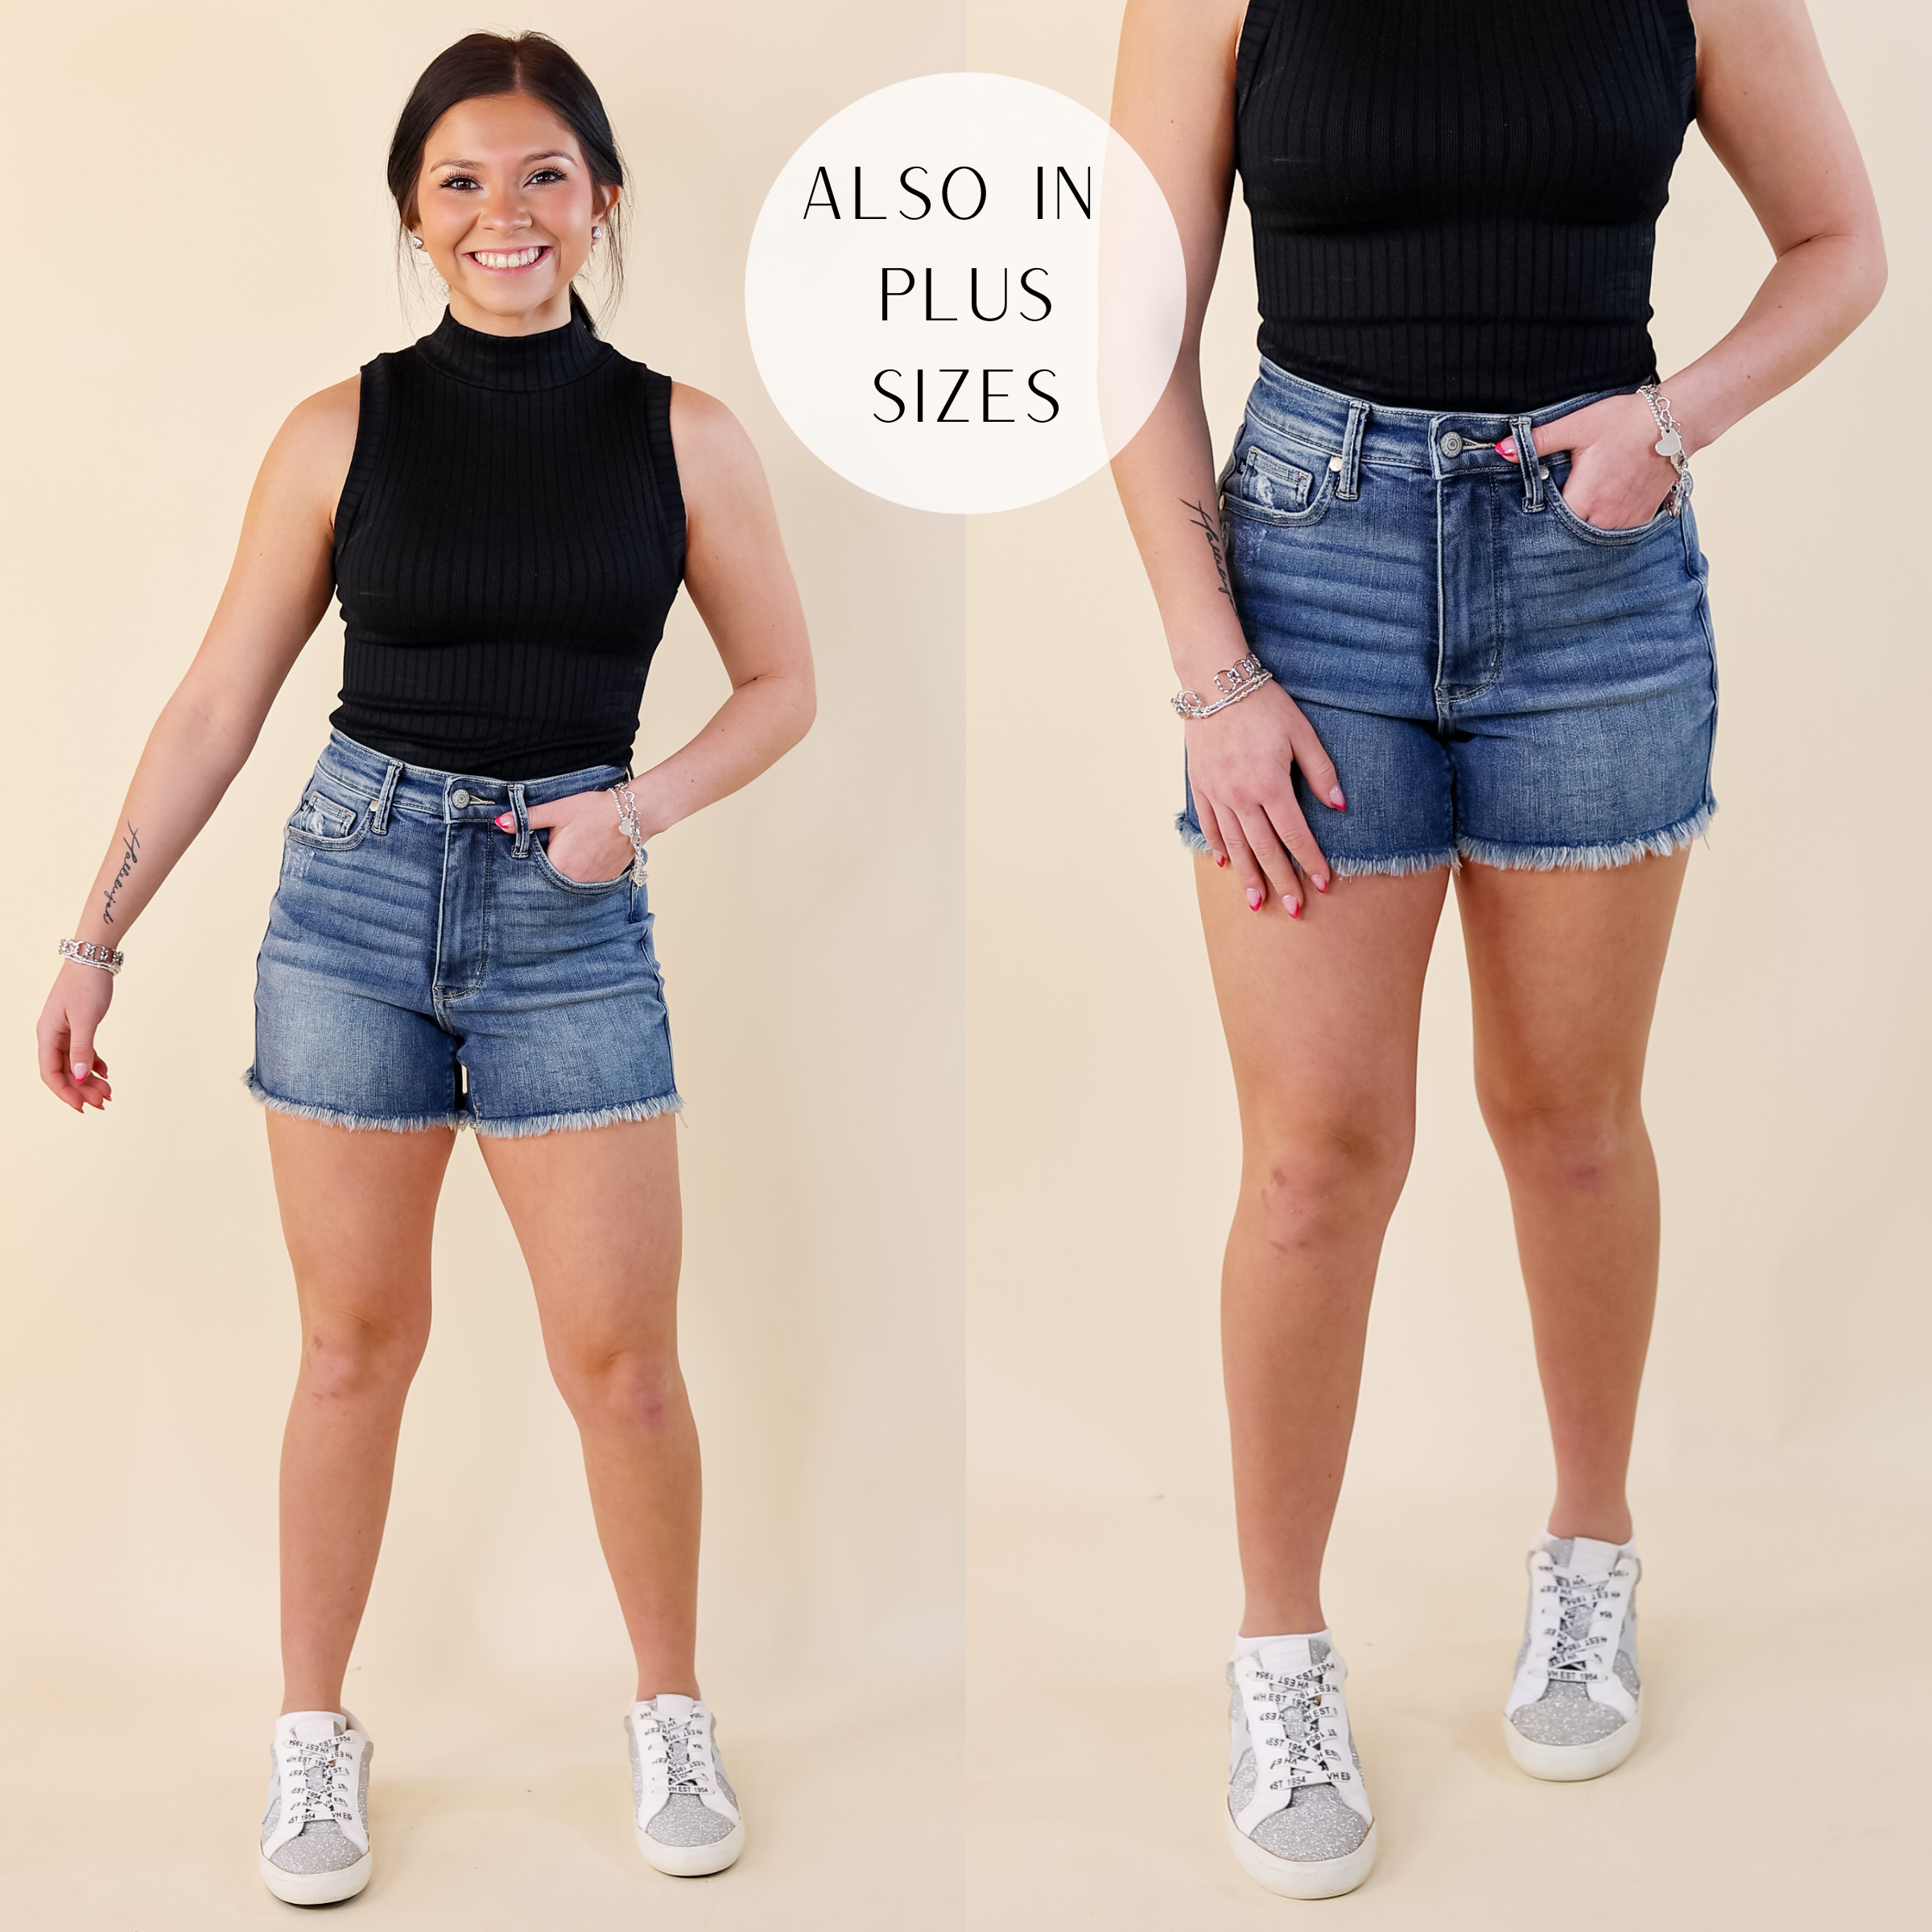 Judy Blue | Sunny Stride Rigid Tummy Control Fray Hem Shorts in Medium Wash - Giddy Up Glamour Boutique